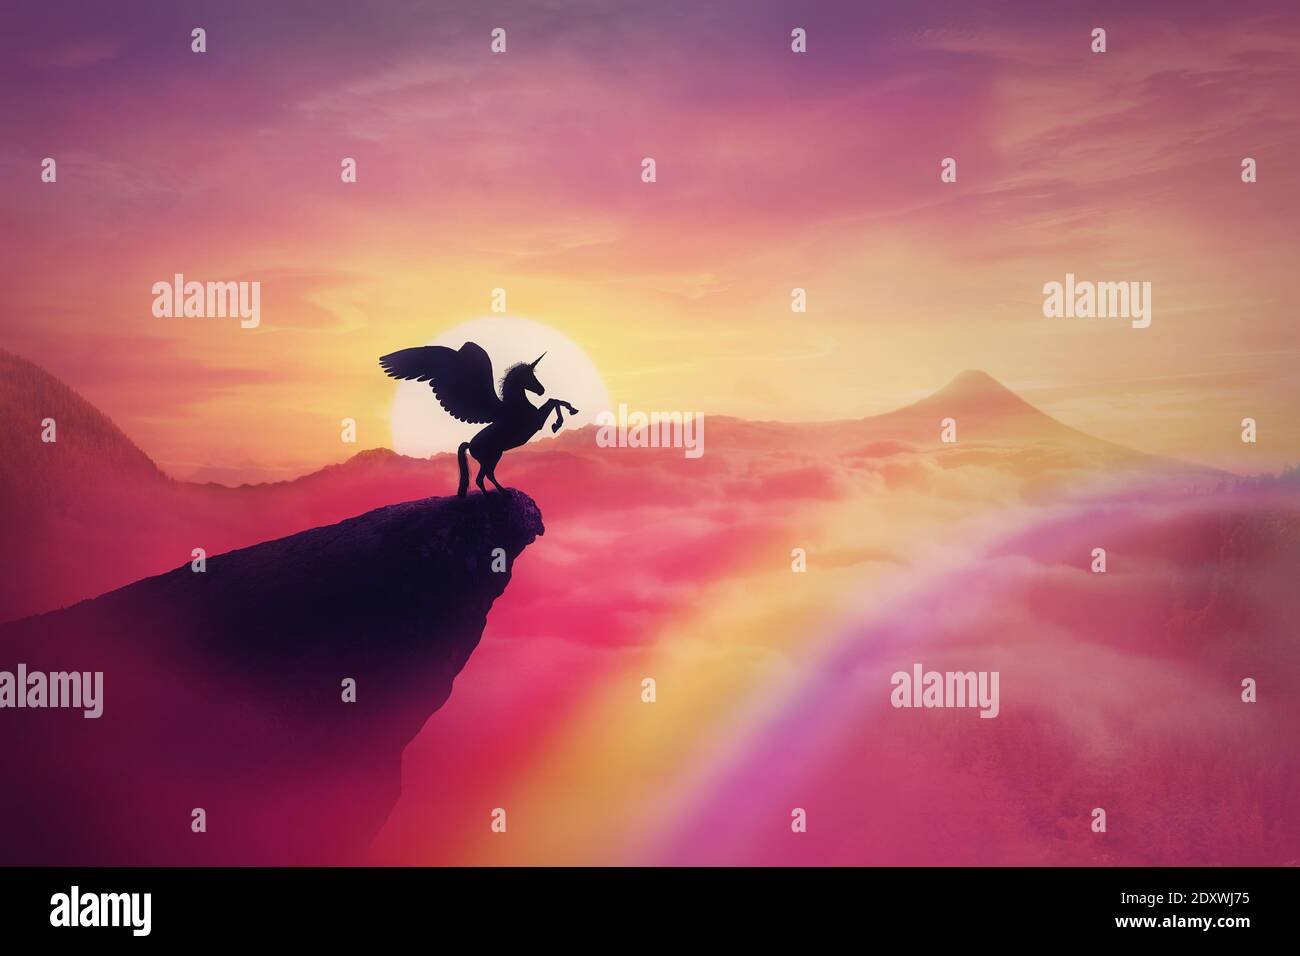 Silhouette sauvage de pegasus sur un bord de falaise contre un coucher de soleil de paradis rose. Arrière-plan magique, créature surréaliste comme licorne avec ailes, au-dessus de l'arc-en-ciel. Banque D'Images